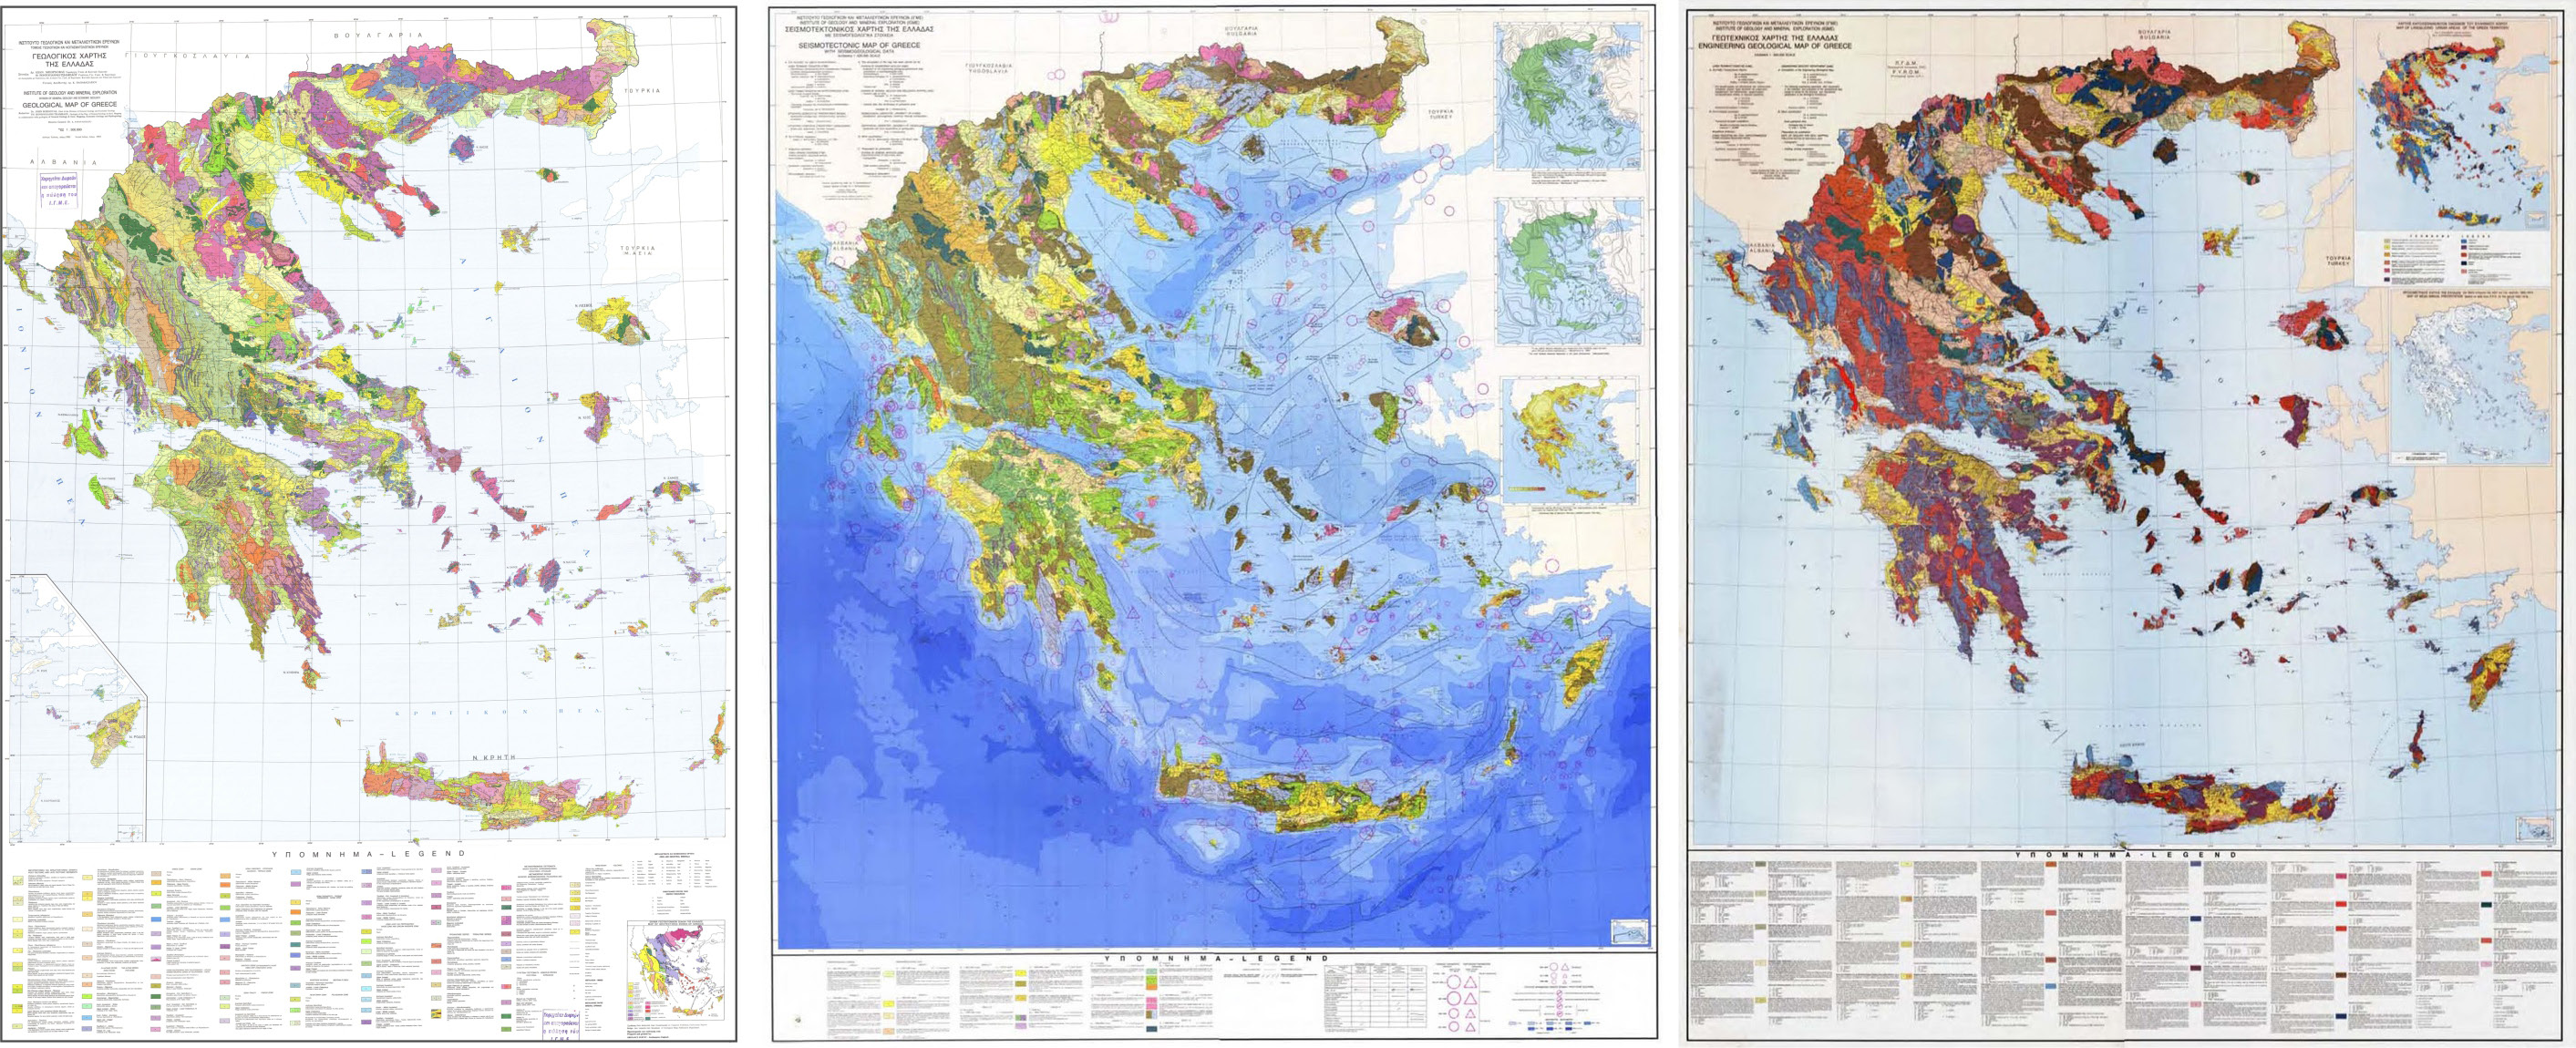 της γεωλογικής δομής του ελληνικού χώρου, δεν παύει η σειρά αυτή να καλύπτει επαρκώς τη βασική γεωλογική πληροφόρηση που χρειάζονται όλοι οι γεωλόγοι και όλες οι ειδικότητες και εξειδικεύσεις της